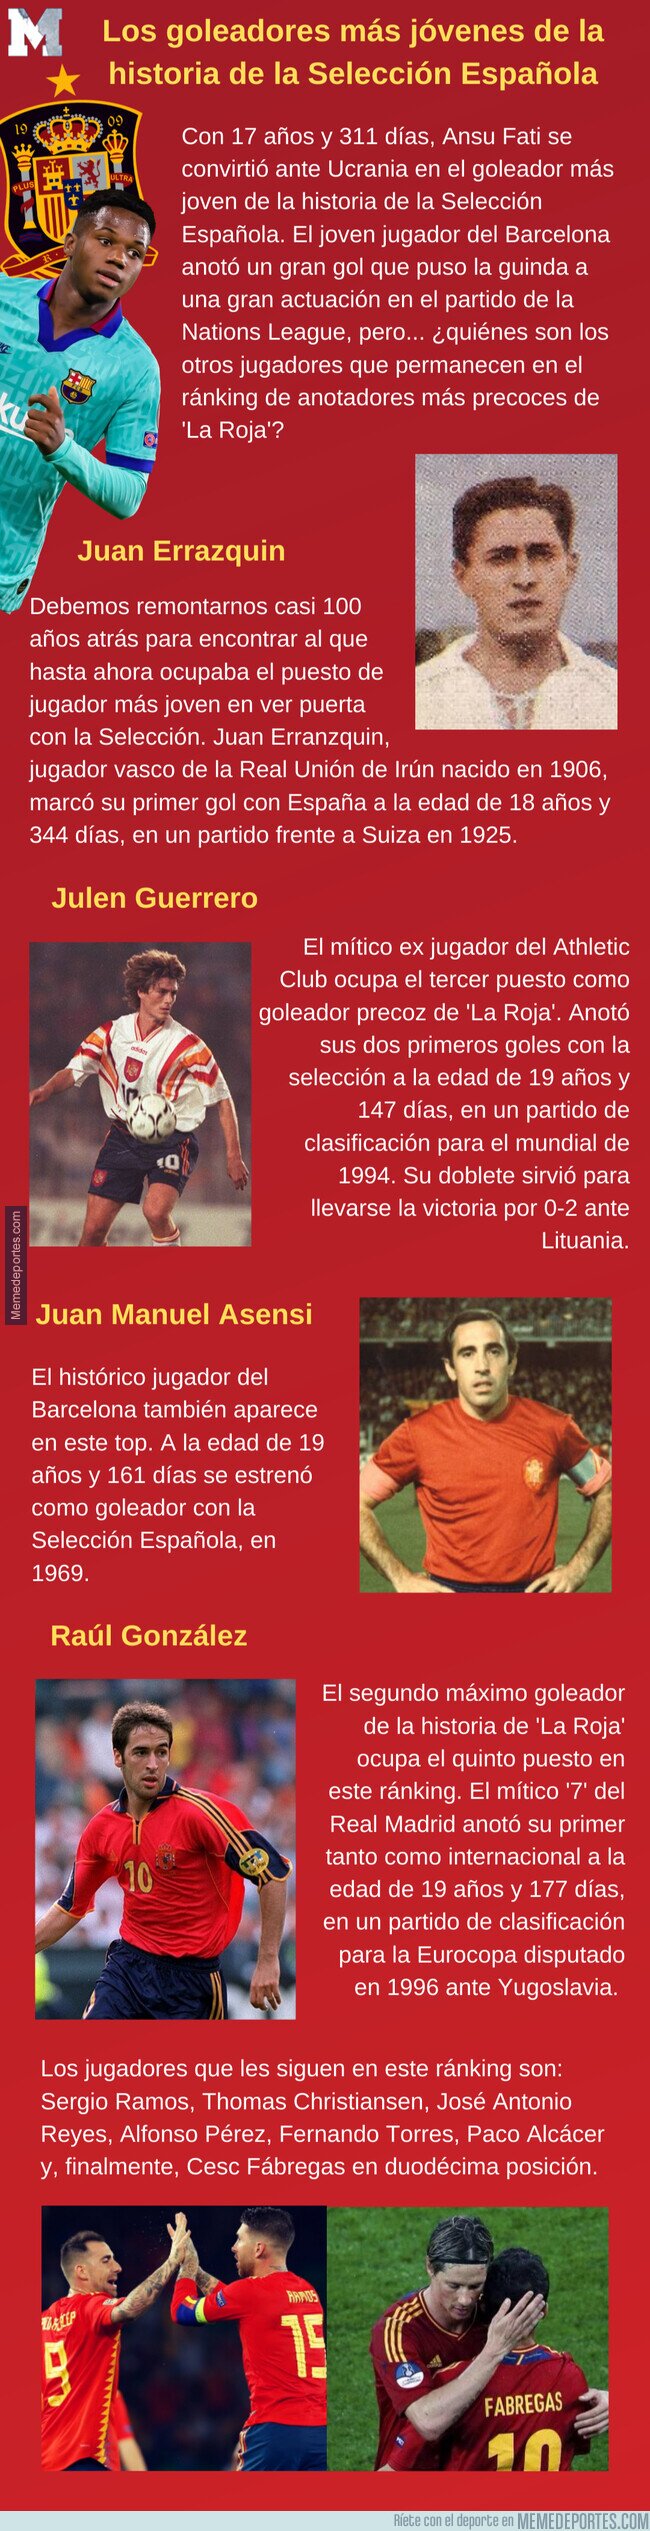 1115207 - Los goleadores más jóvenes de la historia de la Selección Española